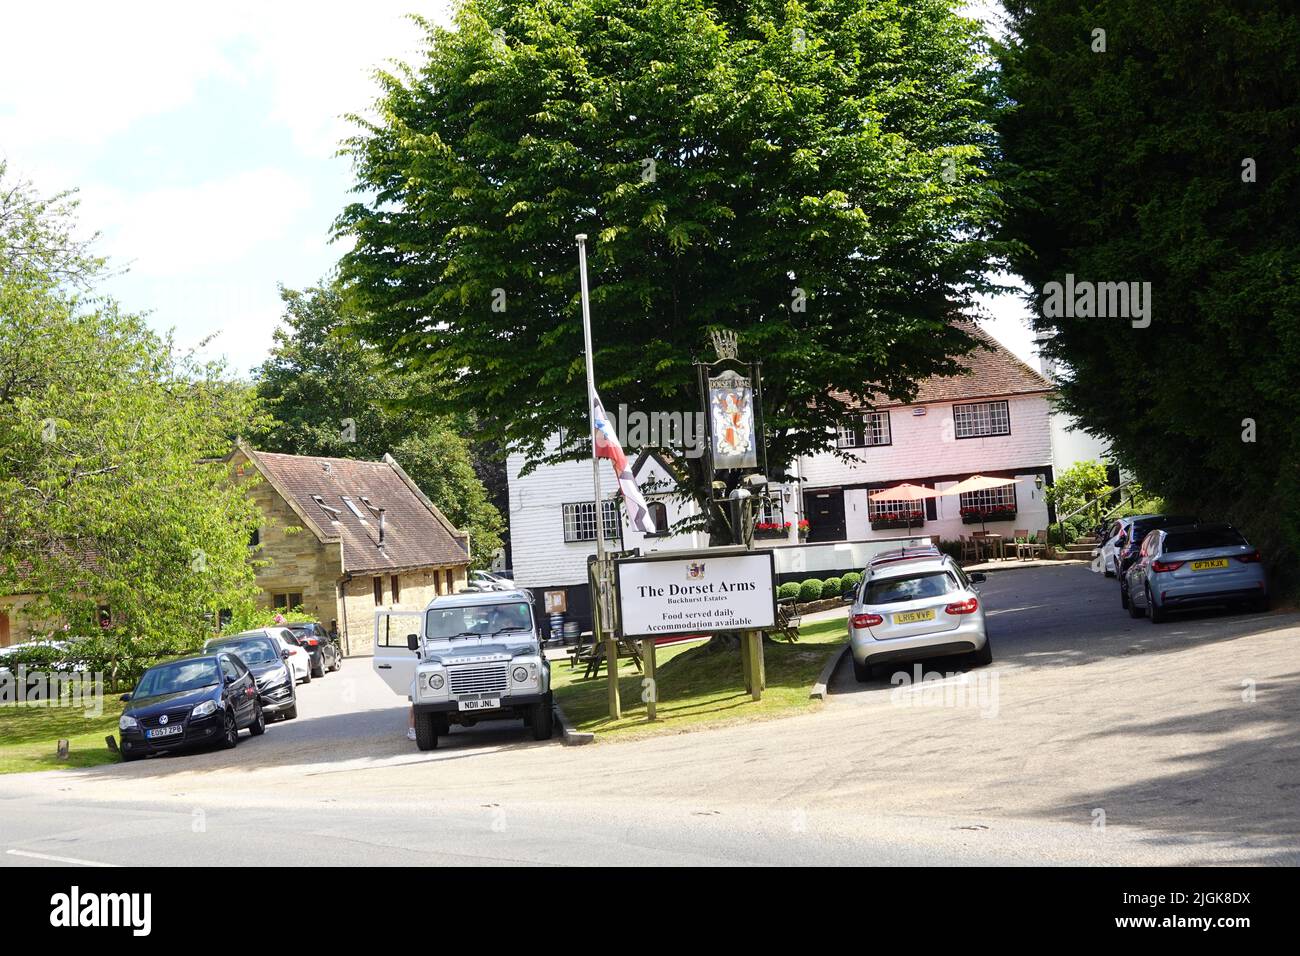 Dorset Arms Pub, Withyham, East Sussex England Vereinigtes Königreich Stockfoto